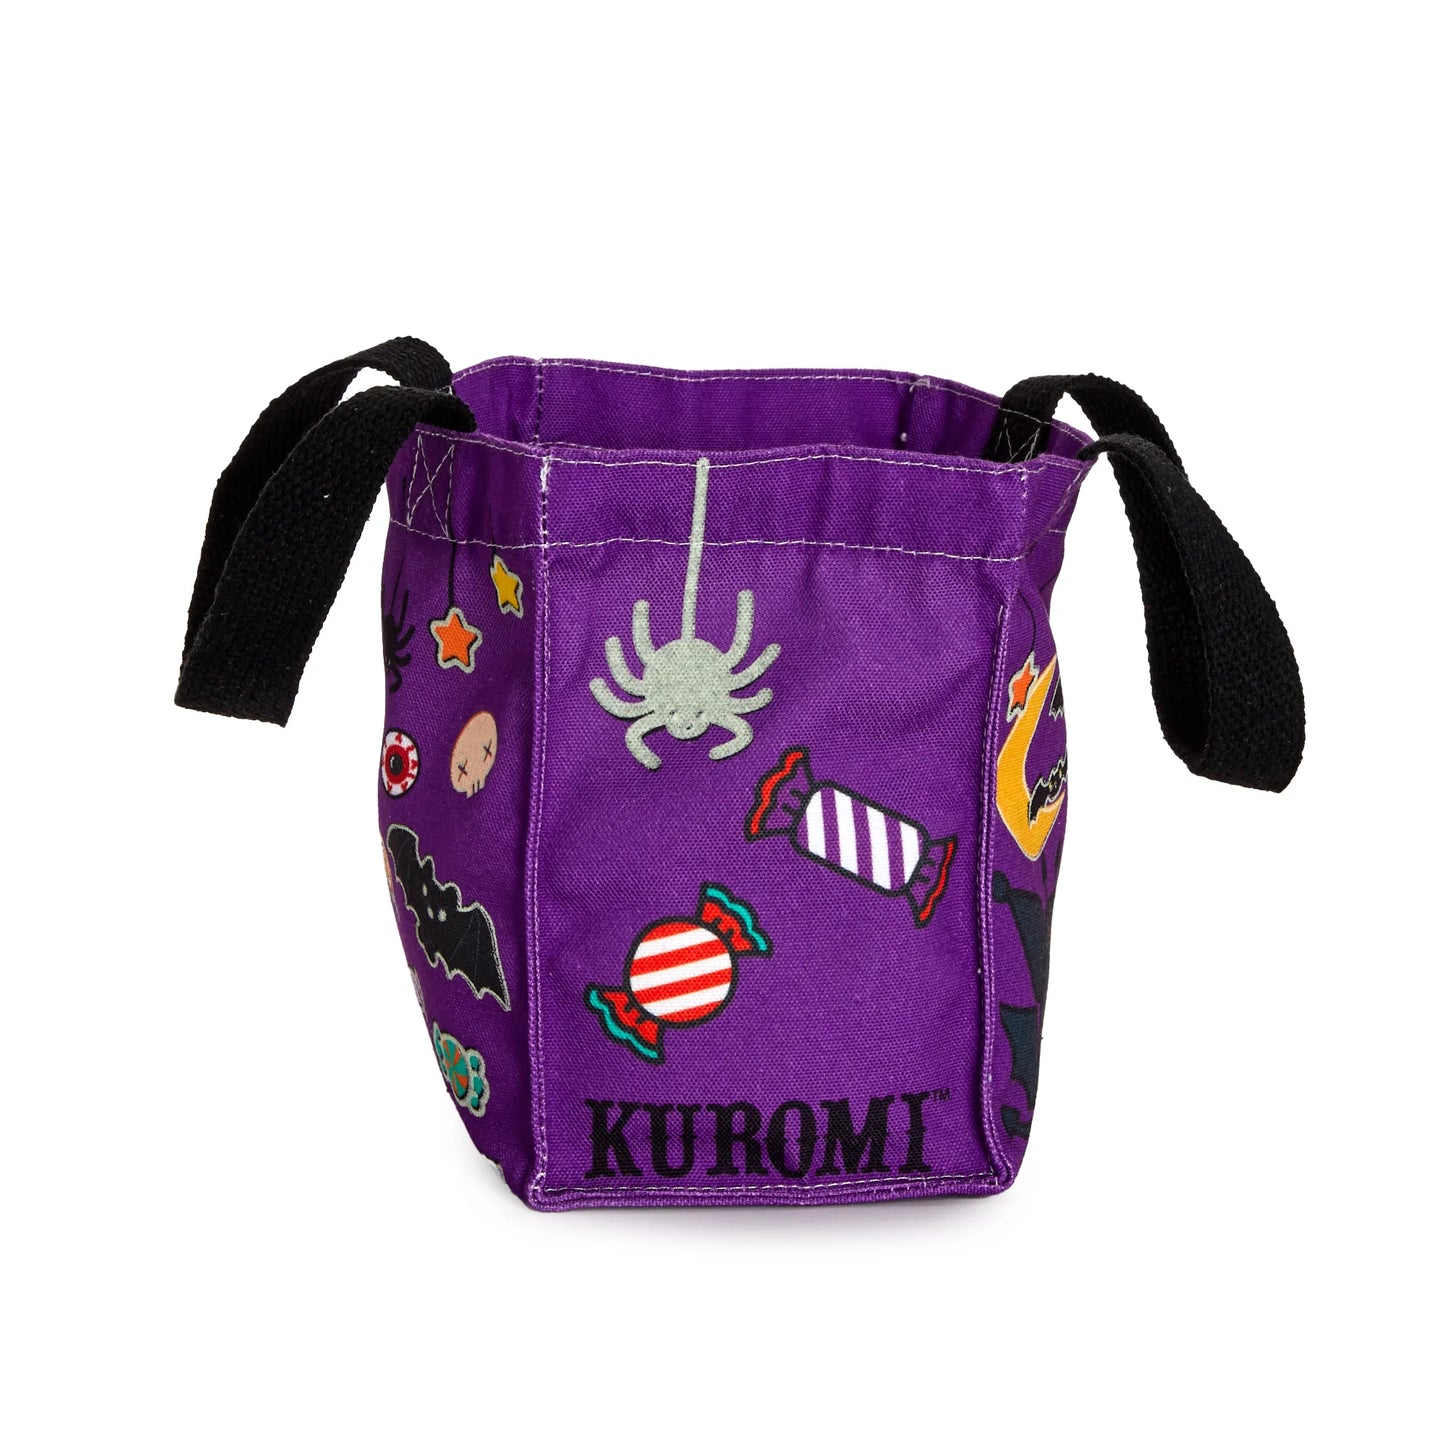 Kuromi Halloween Glow in the Dark Treat Bag